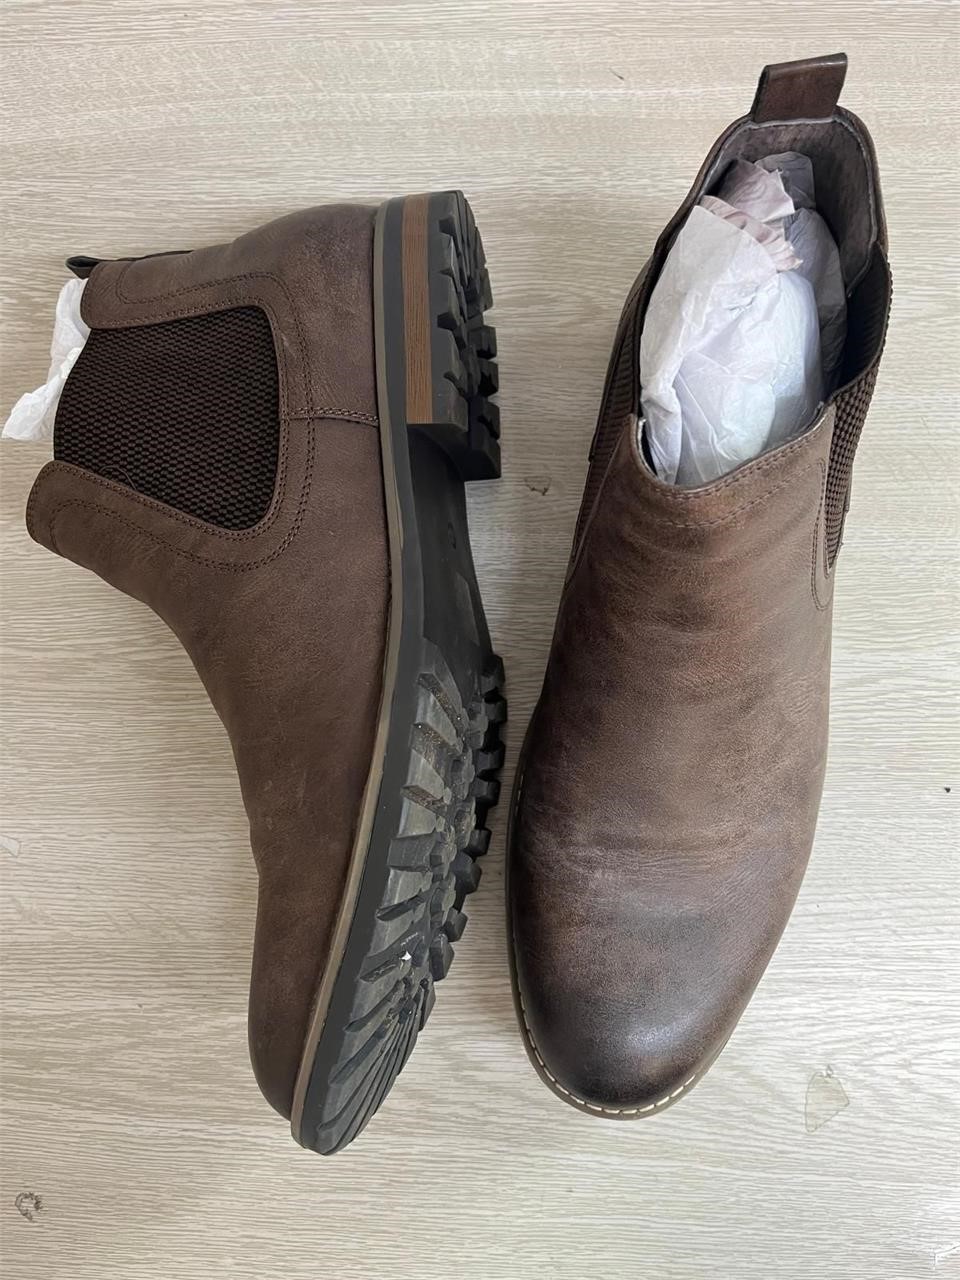 $70 Men's Boots, 13 size